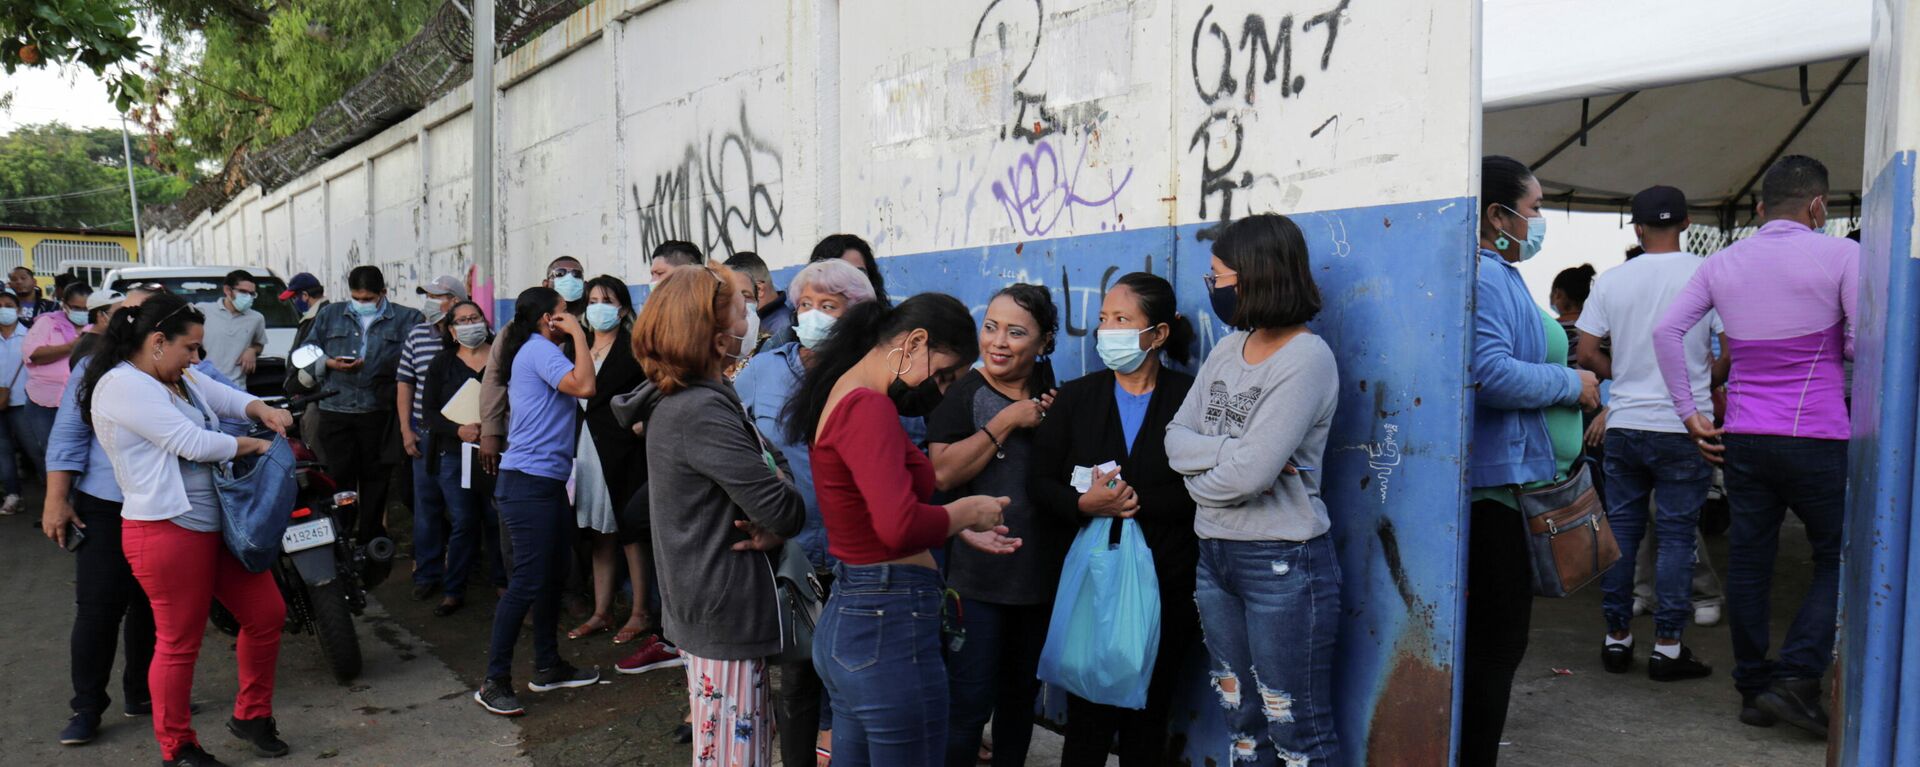 Los nicaragüenses hacen cola para votar, el 7 de noviembre de 2021 - Sputnik Mundo, 1920, 07.11.2021